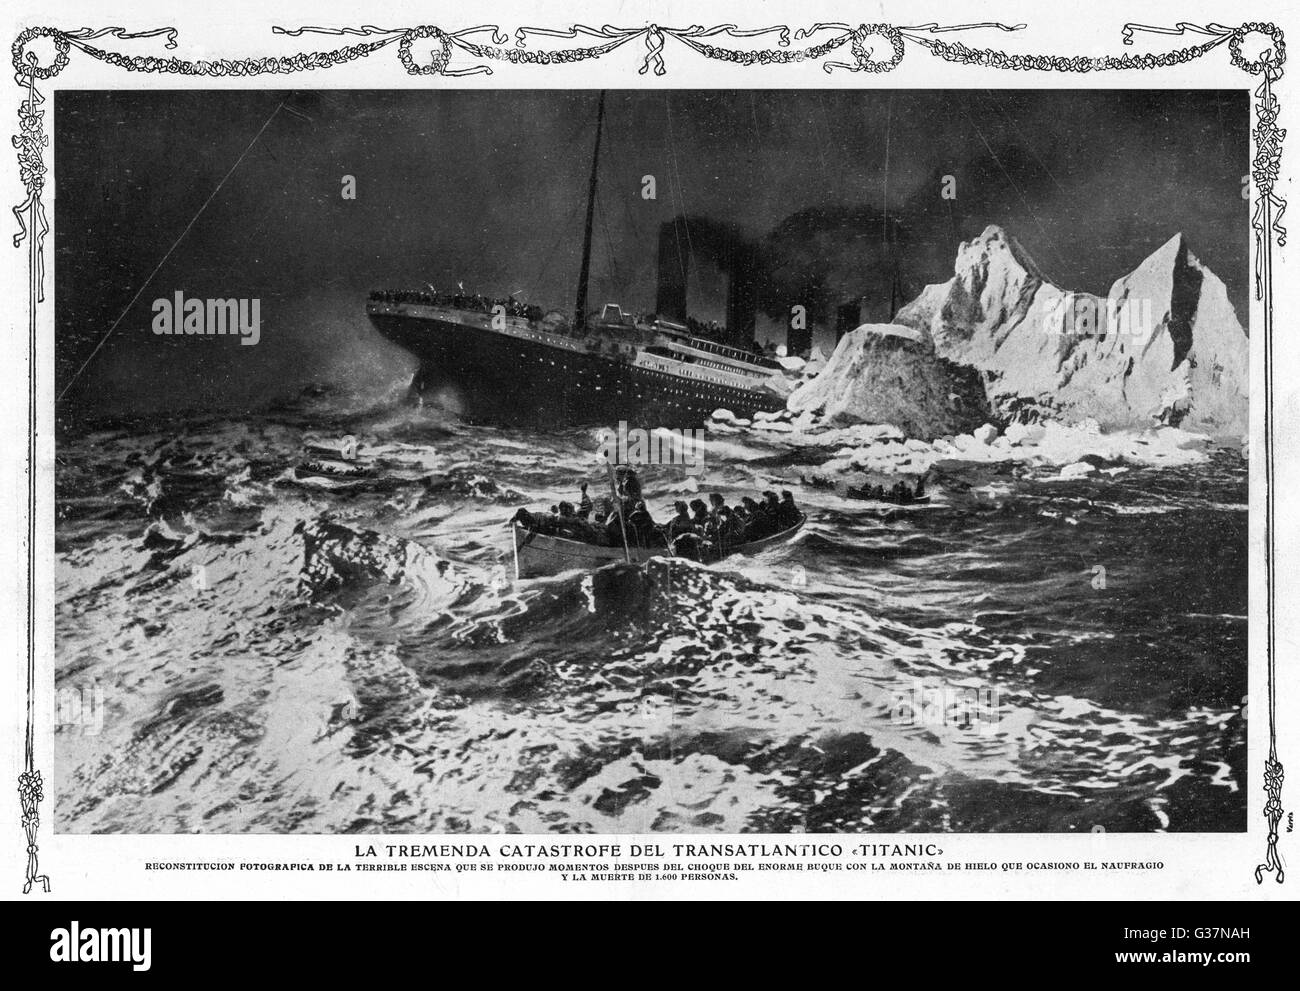 Illustrazione del relitto e per i superstiti in scialuppa di salvataggio. Data: 1912 Foto Stock